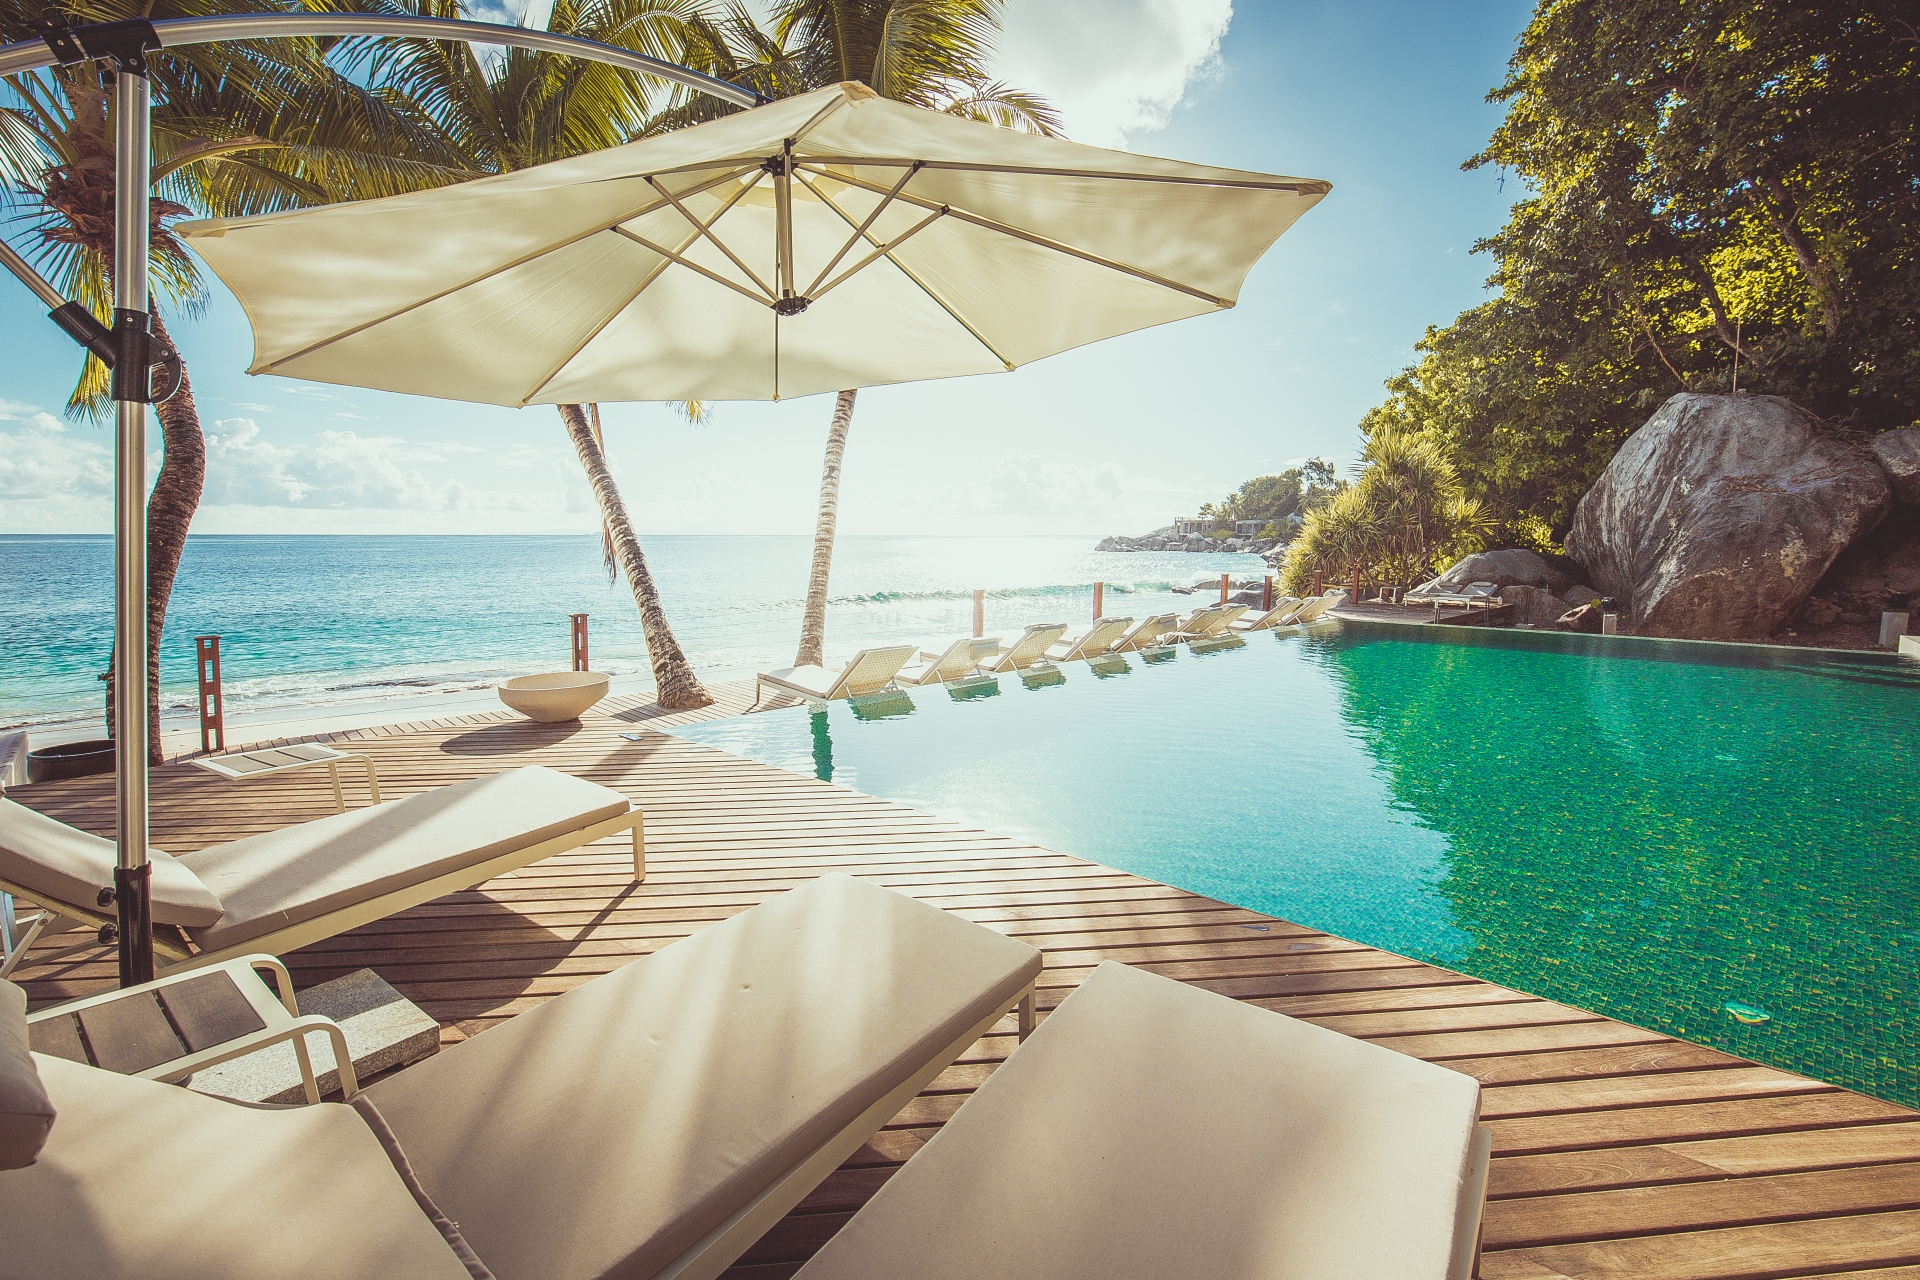 Sunbeds by the Pool - Carana Beach Hotel